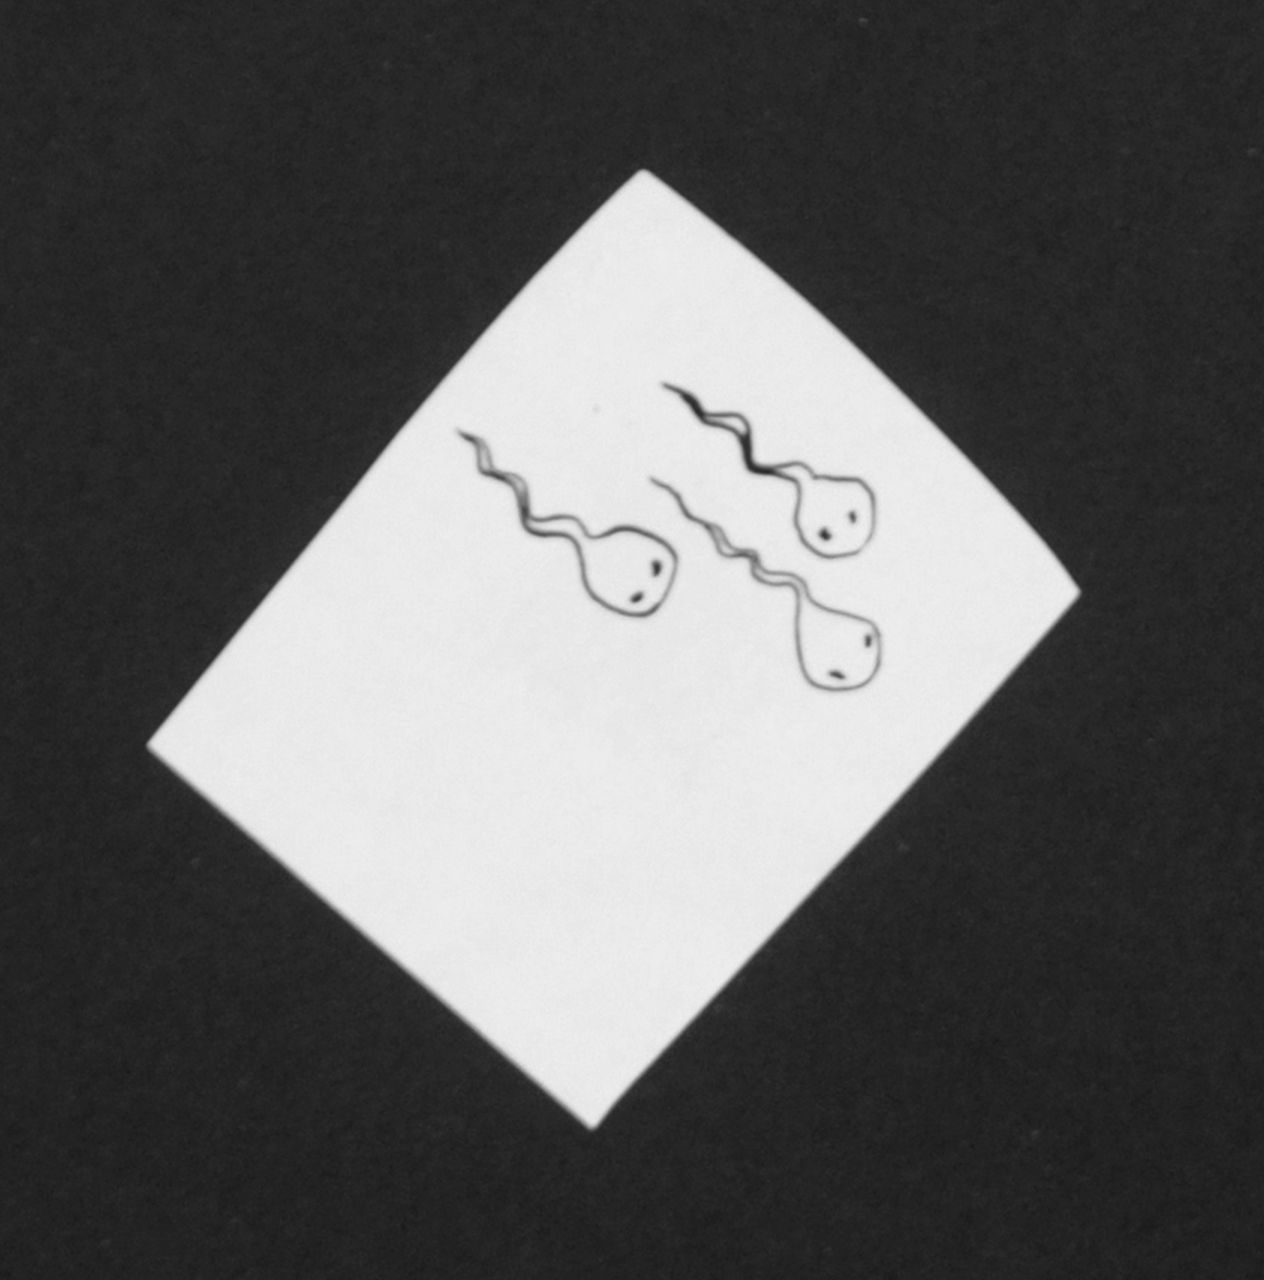 Oranje-Nassau (Prinses Beatrix) B.W.A. van | Beatrix Wilhelmina Armgard van Oranje-Nassau (Prinses Beatrix), Drie kikkervisjes, potlood en Oost-Indische inkt op papier 5,2 x 4,1 cm, te dateren augustus 1960